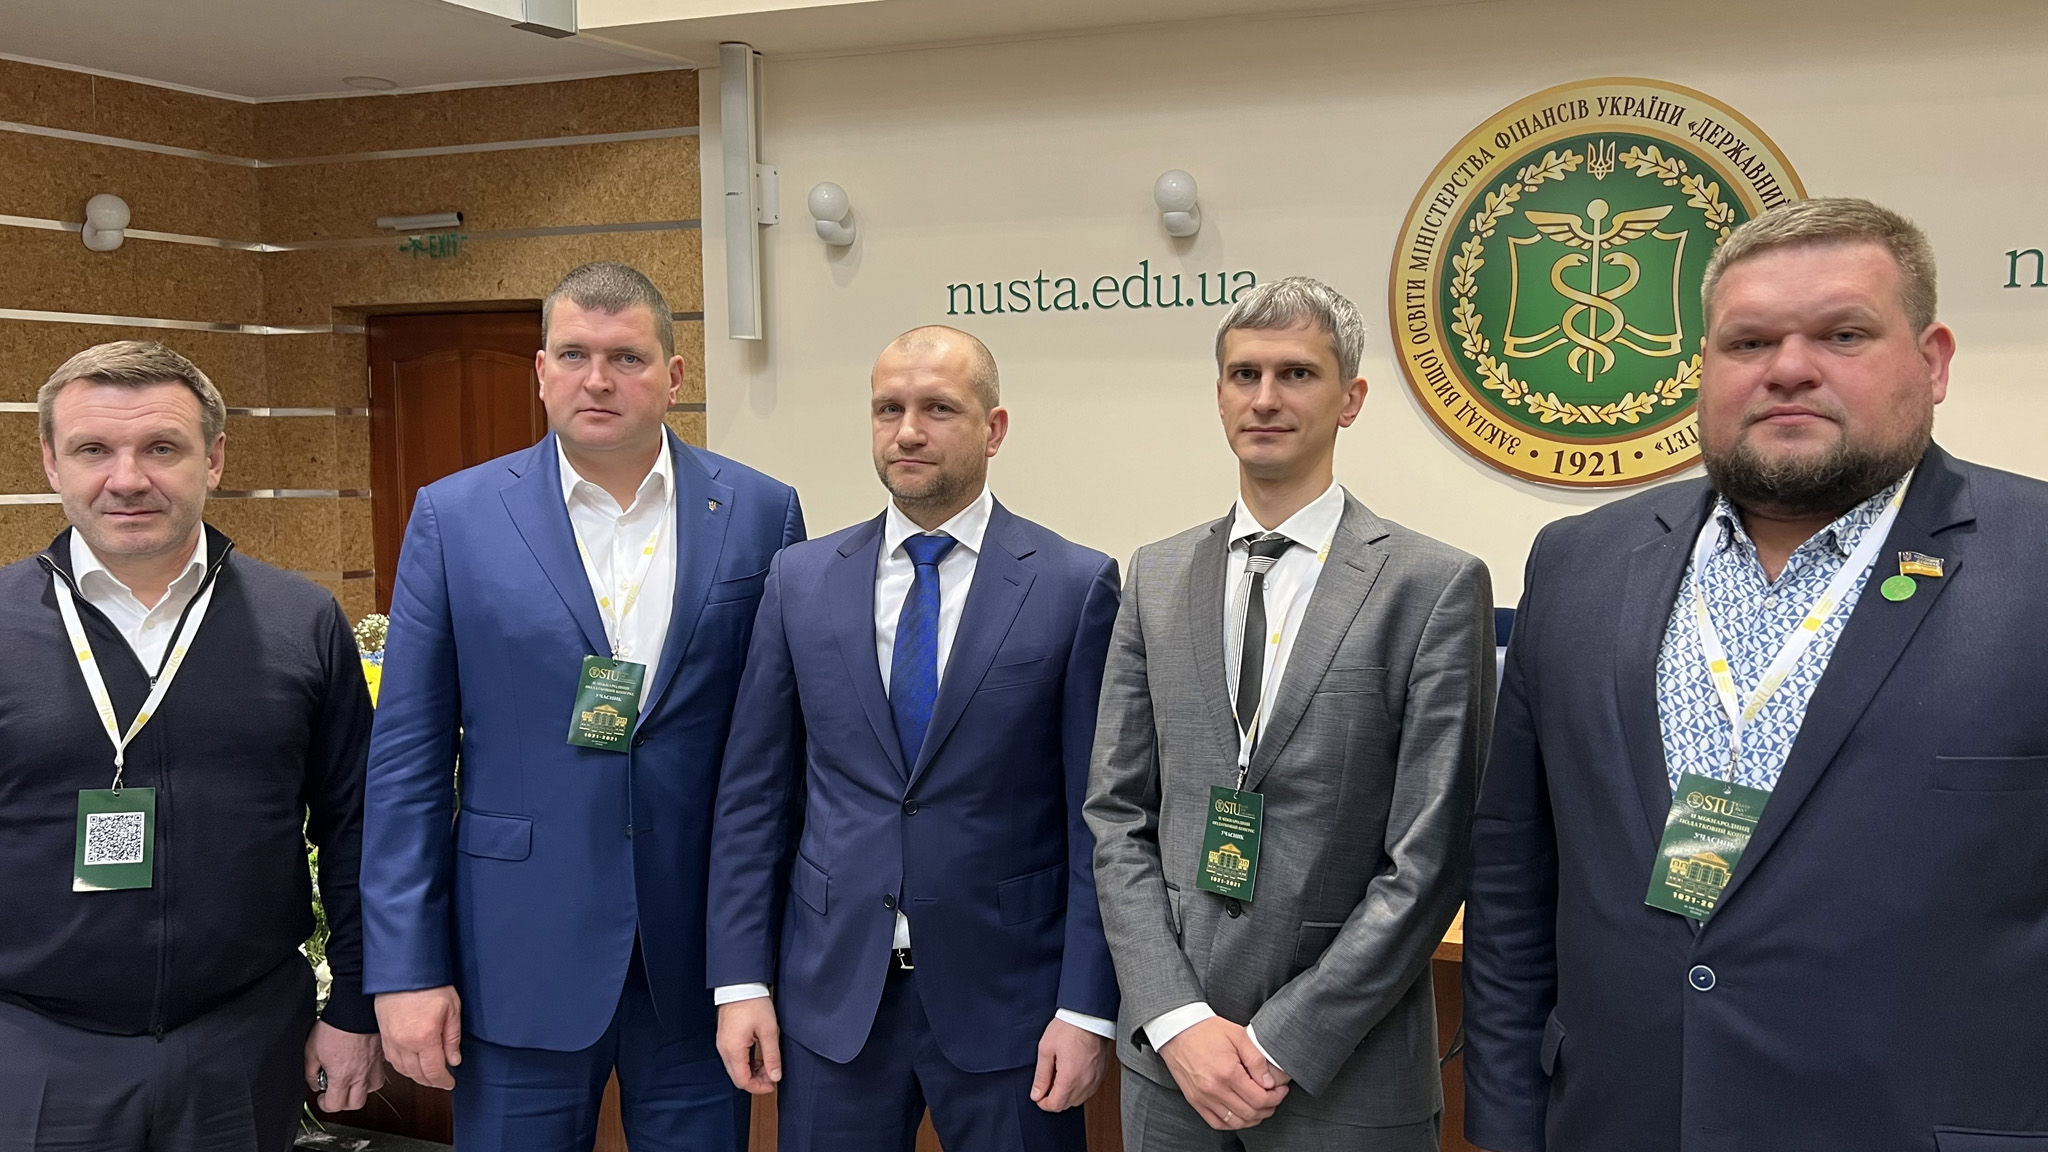 Евгений Даниленко вместе с другими участниками Конгресса